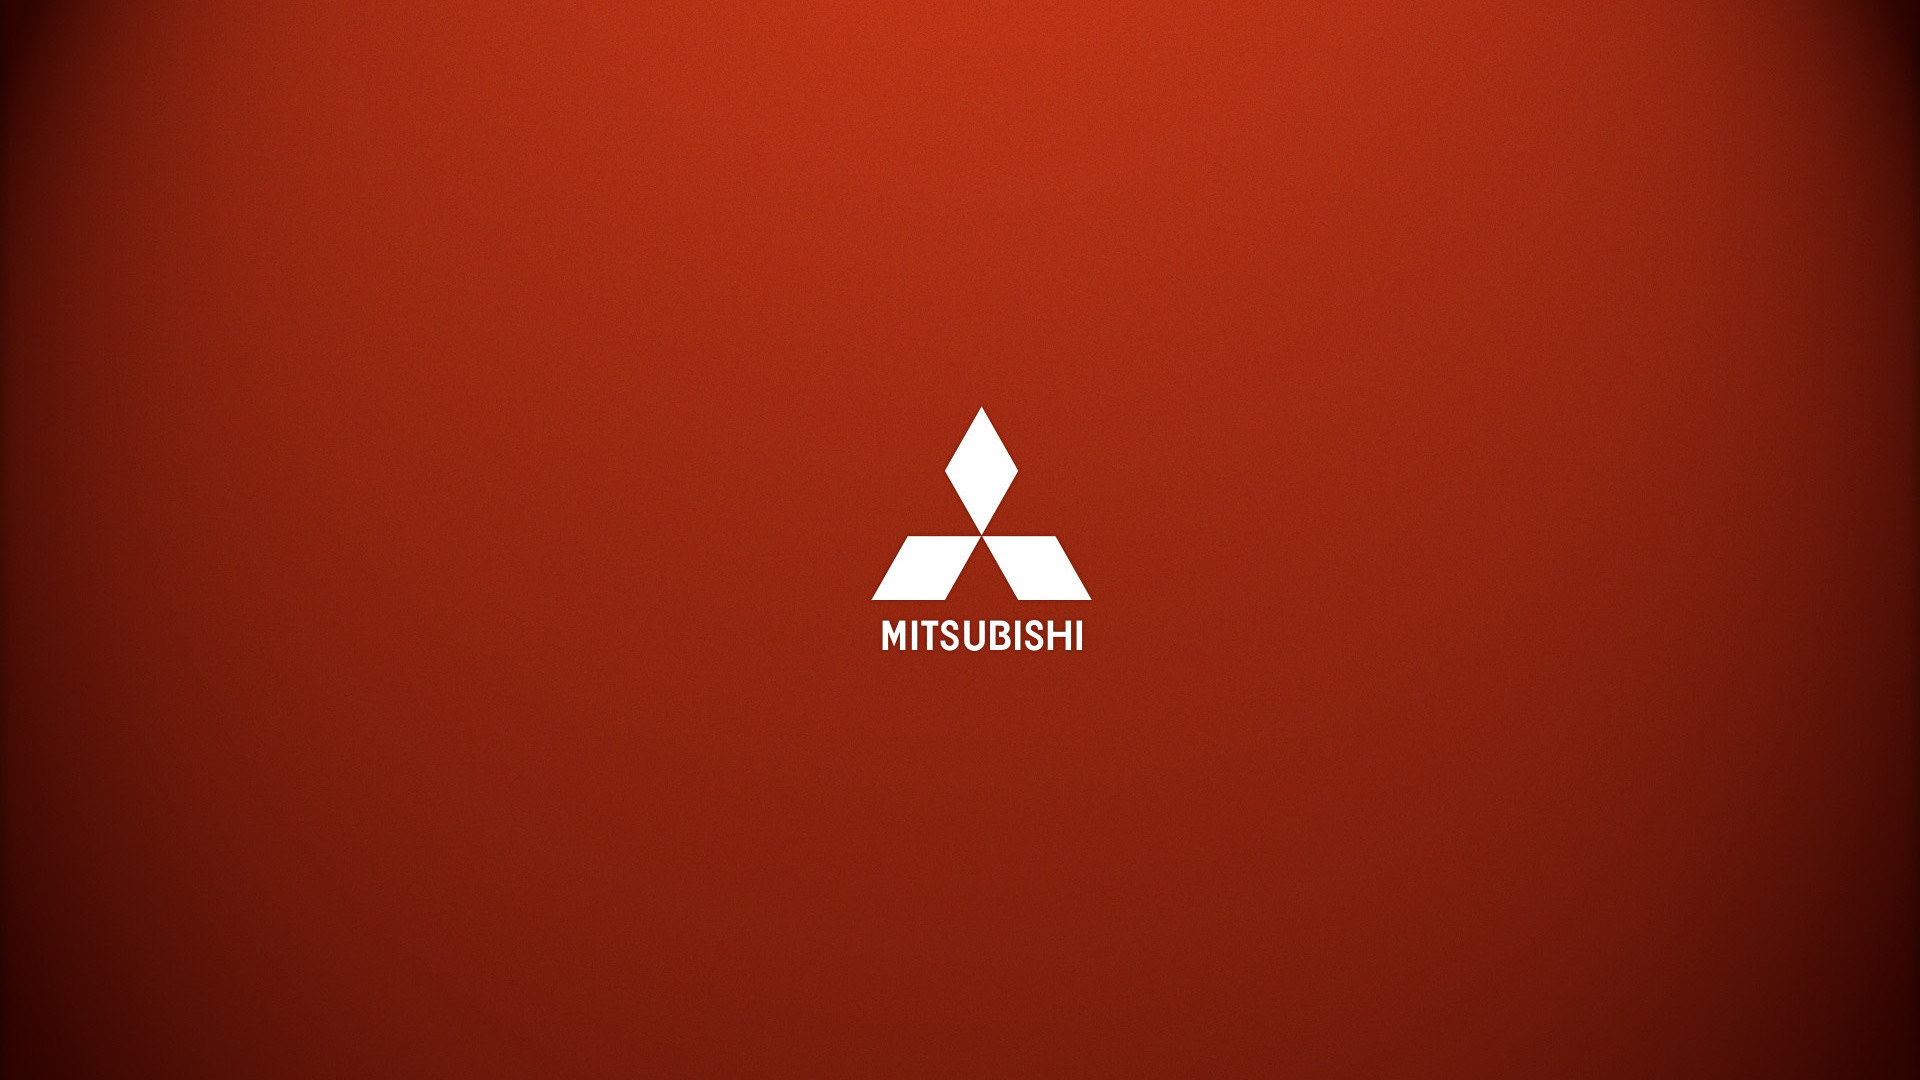 fond d'écran mitsubishi hd,orange,police de caractère,texte,graphique,conception graphique